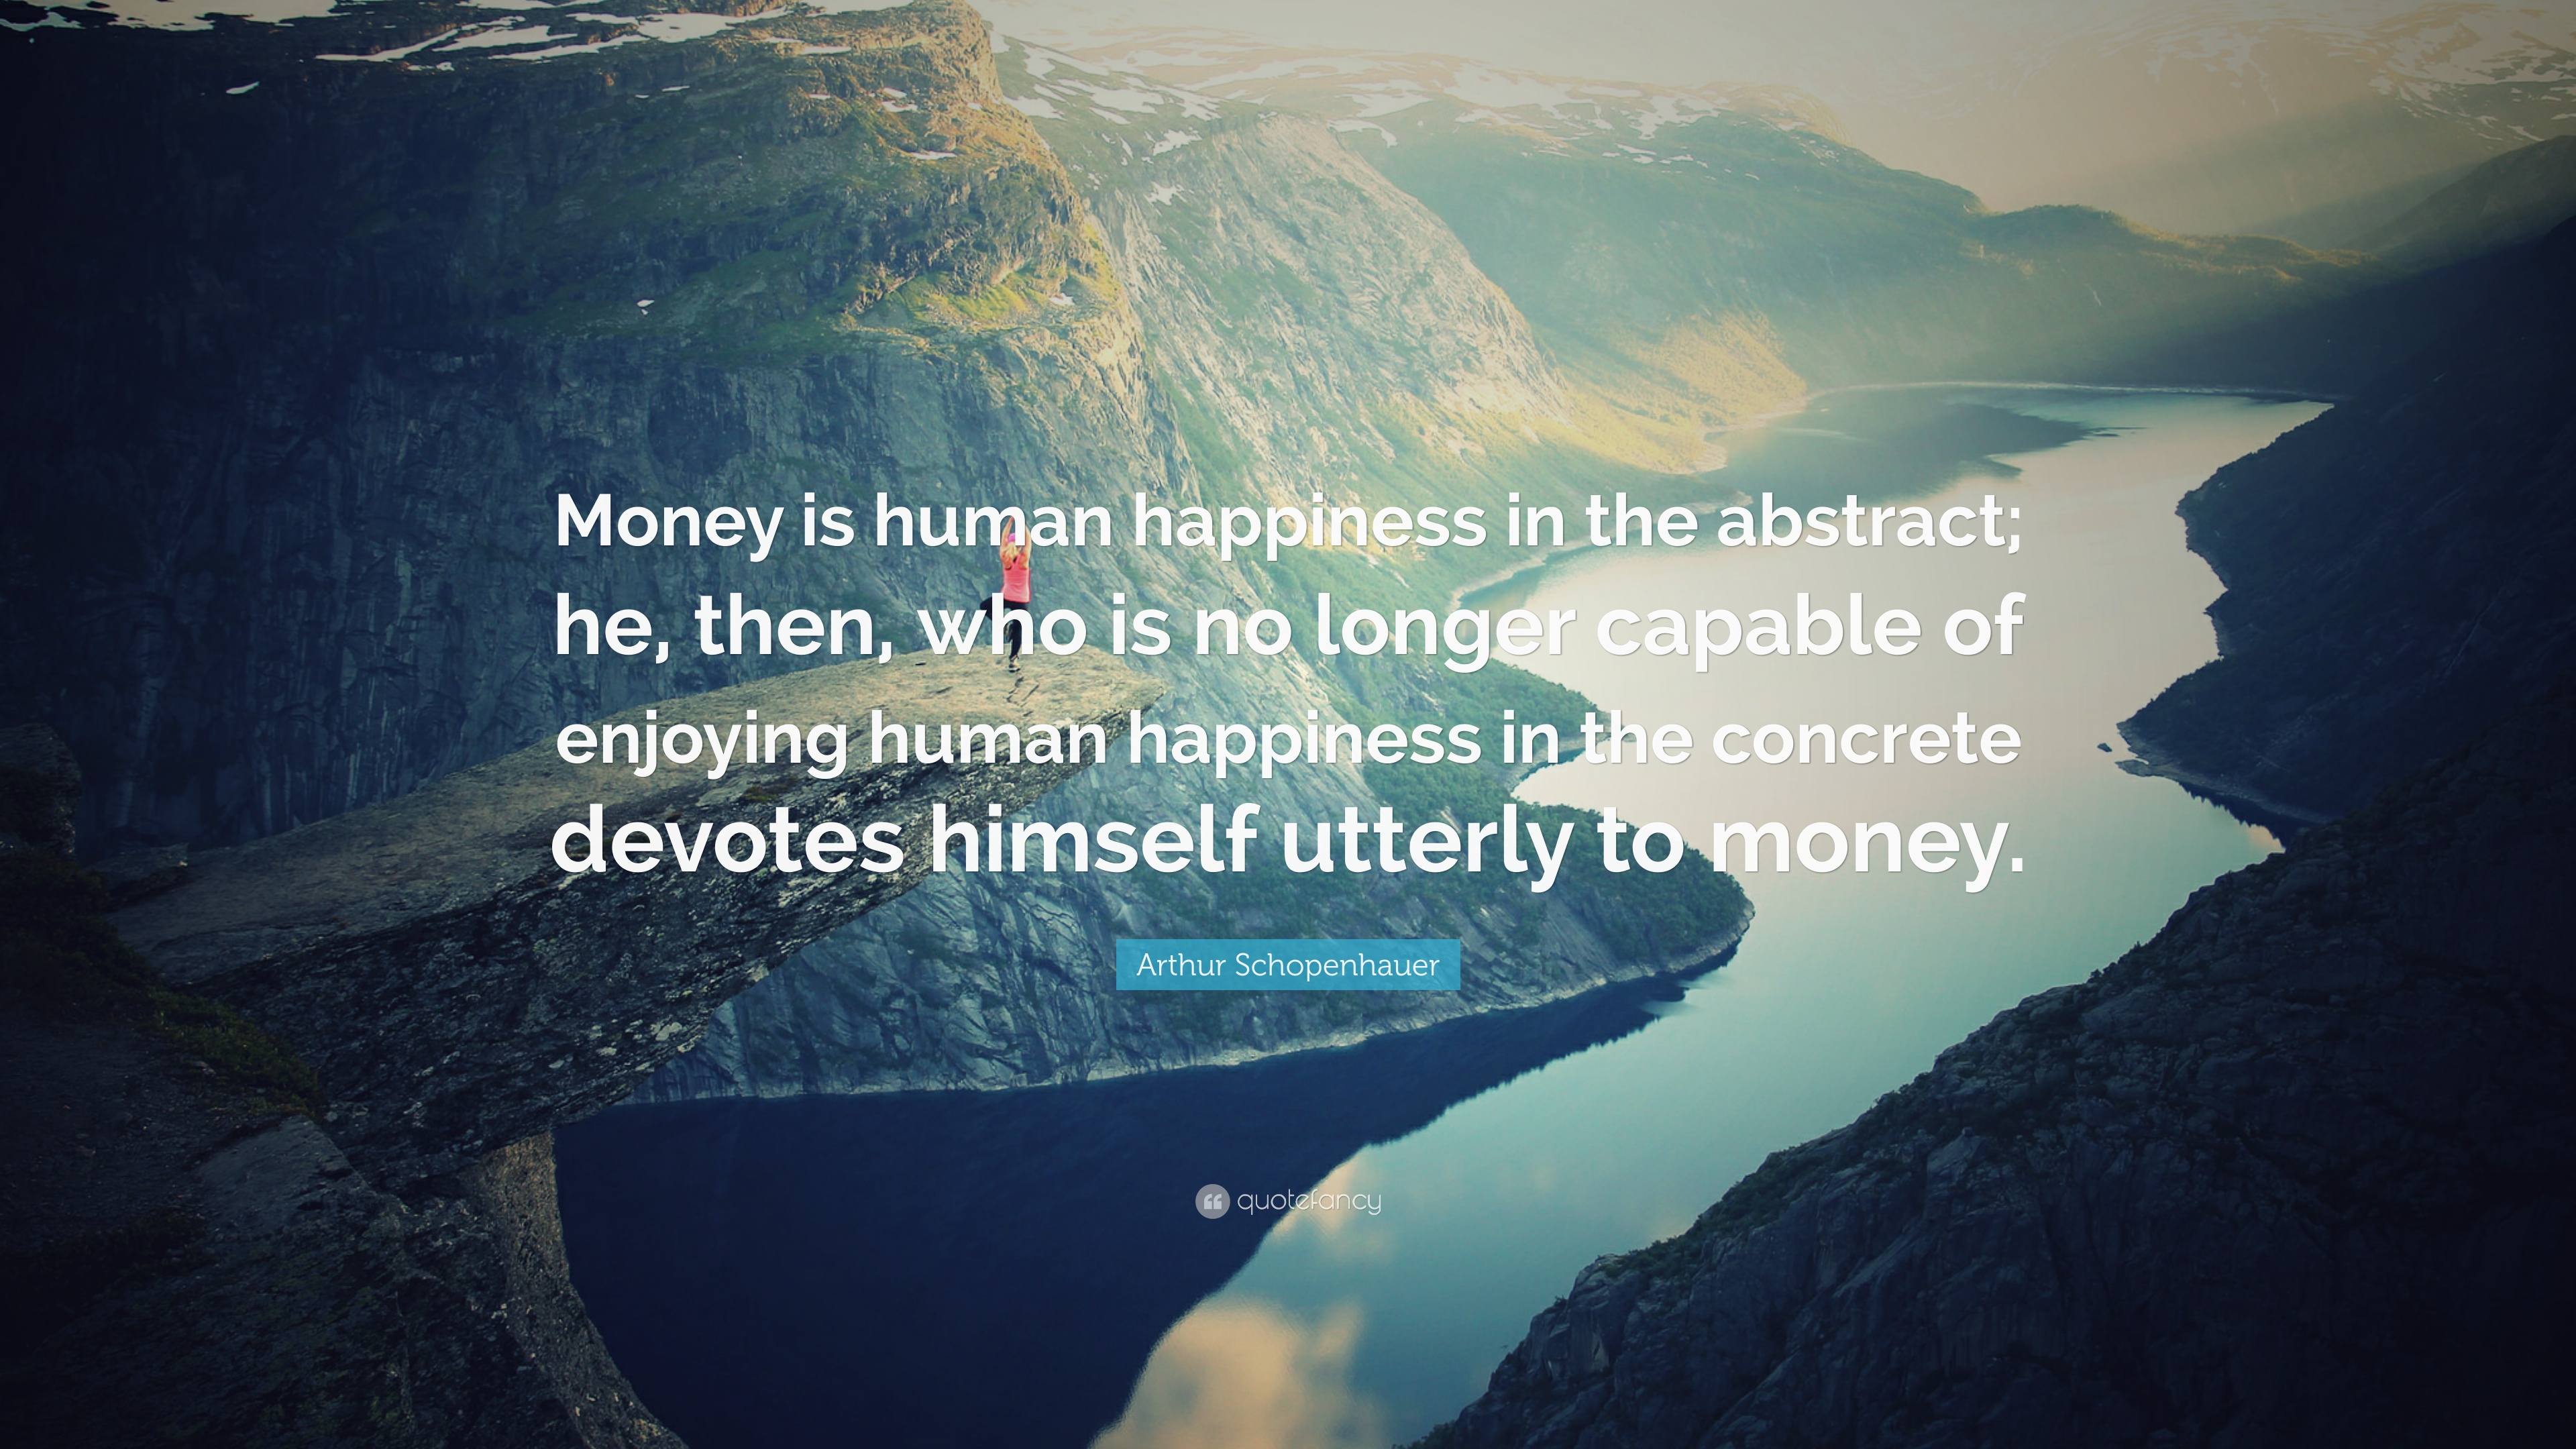 Arthur Schopenhauer Quote: “Money is human happiness in